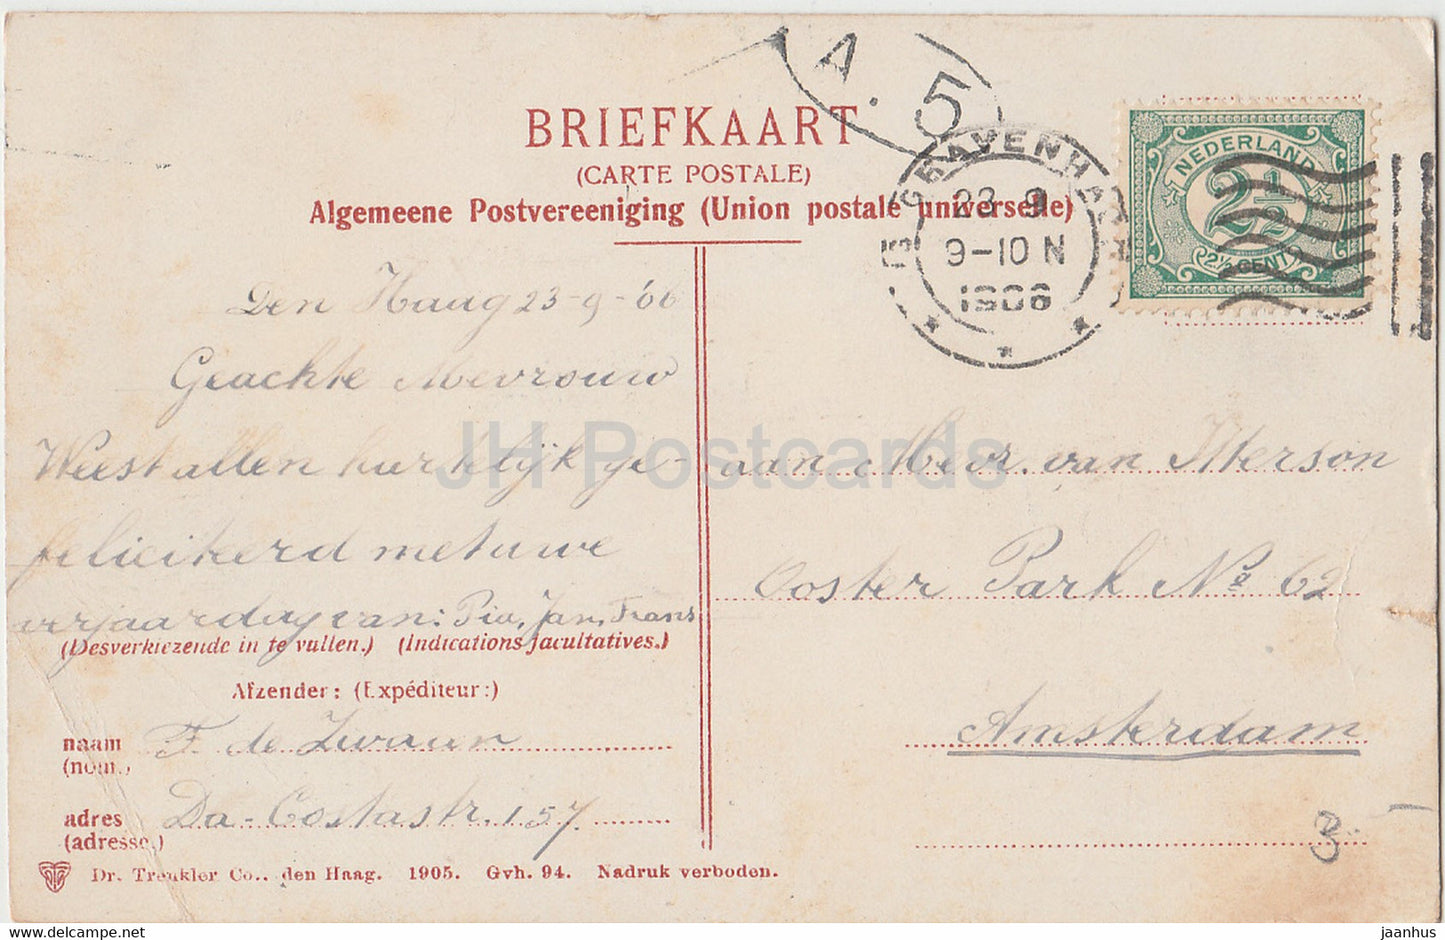 S Gravenhage  - Interieur van de Ridderzaal - 2320 - old postcard - 1906 - Netherlands - used